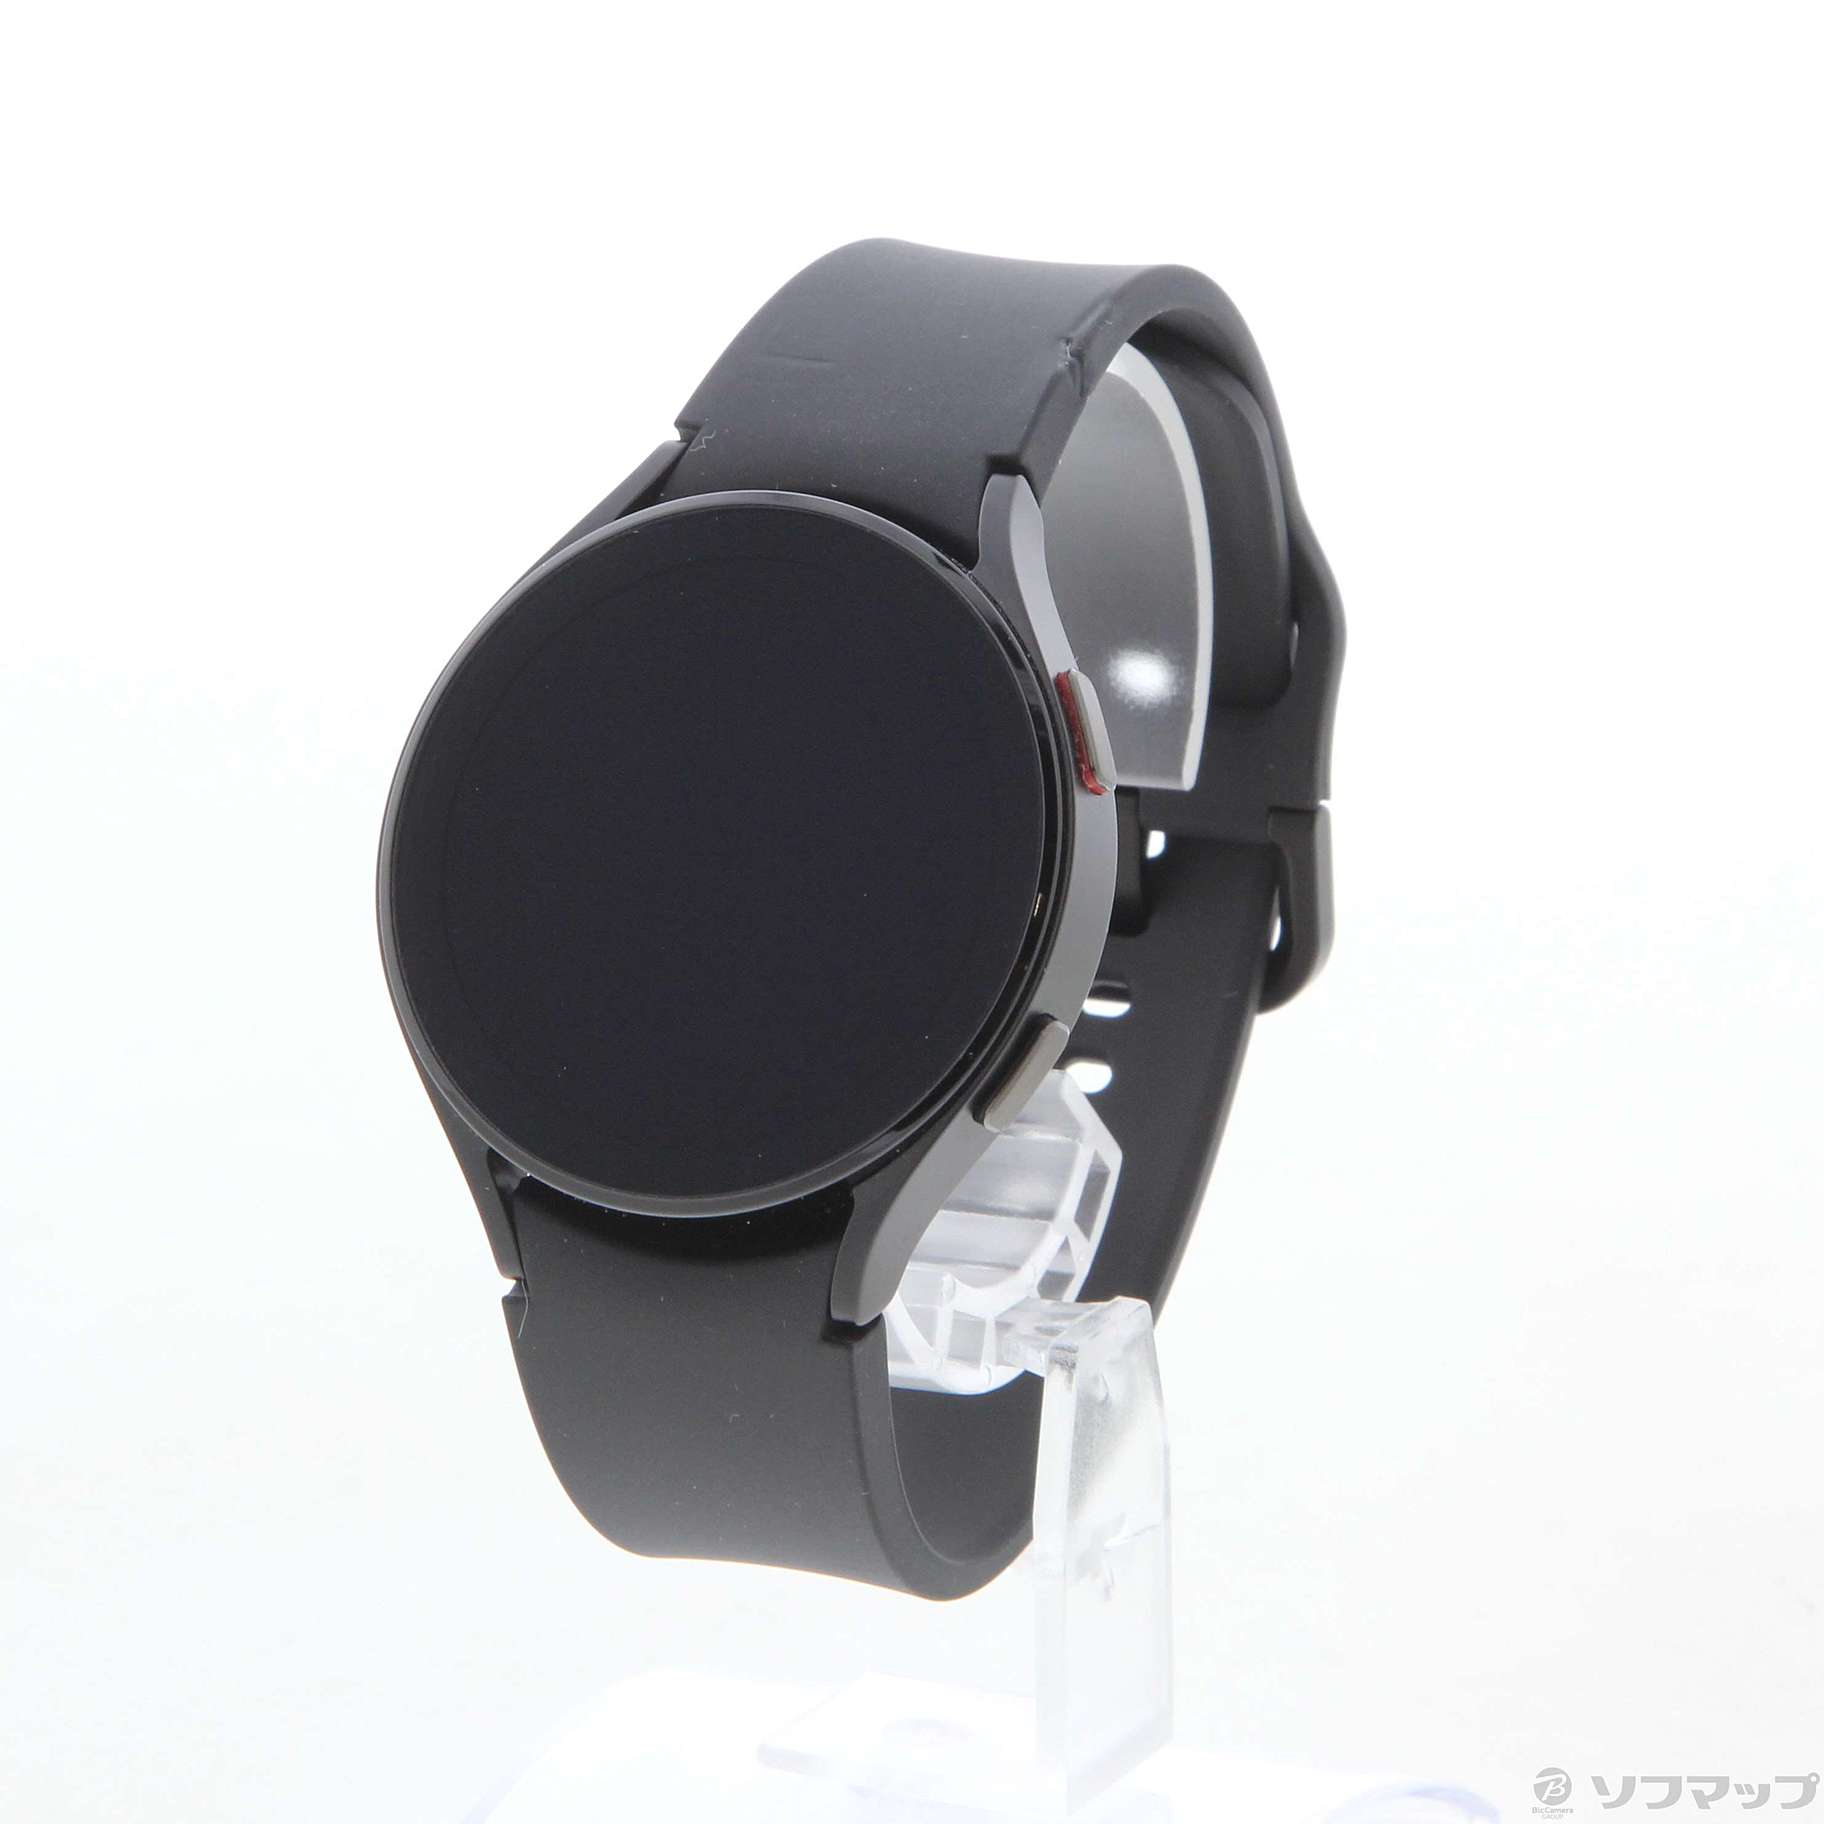 〔展示品〕 Galaxy Watch4 44mm ブラック SM-R870NZKAXJP